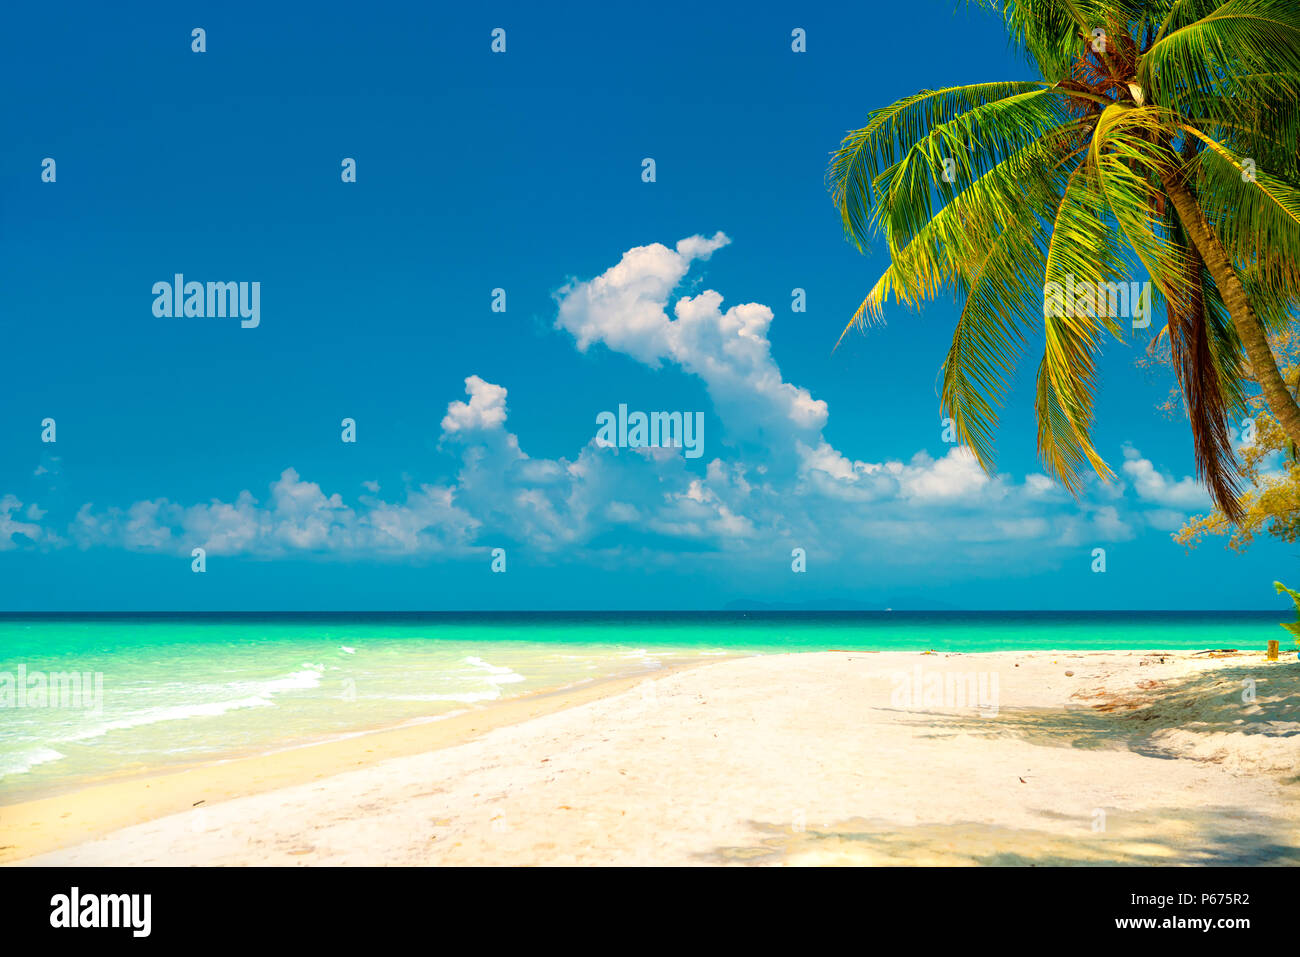 La nature sauvage du paysage incroyable plage tropicale avec palmiers sur fond de paysage de mer propre cristal bleu lagon et ciel d'été sur l'horizon Banque D'Images